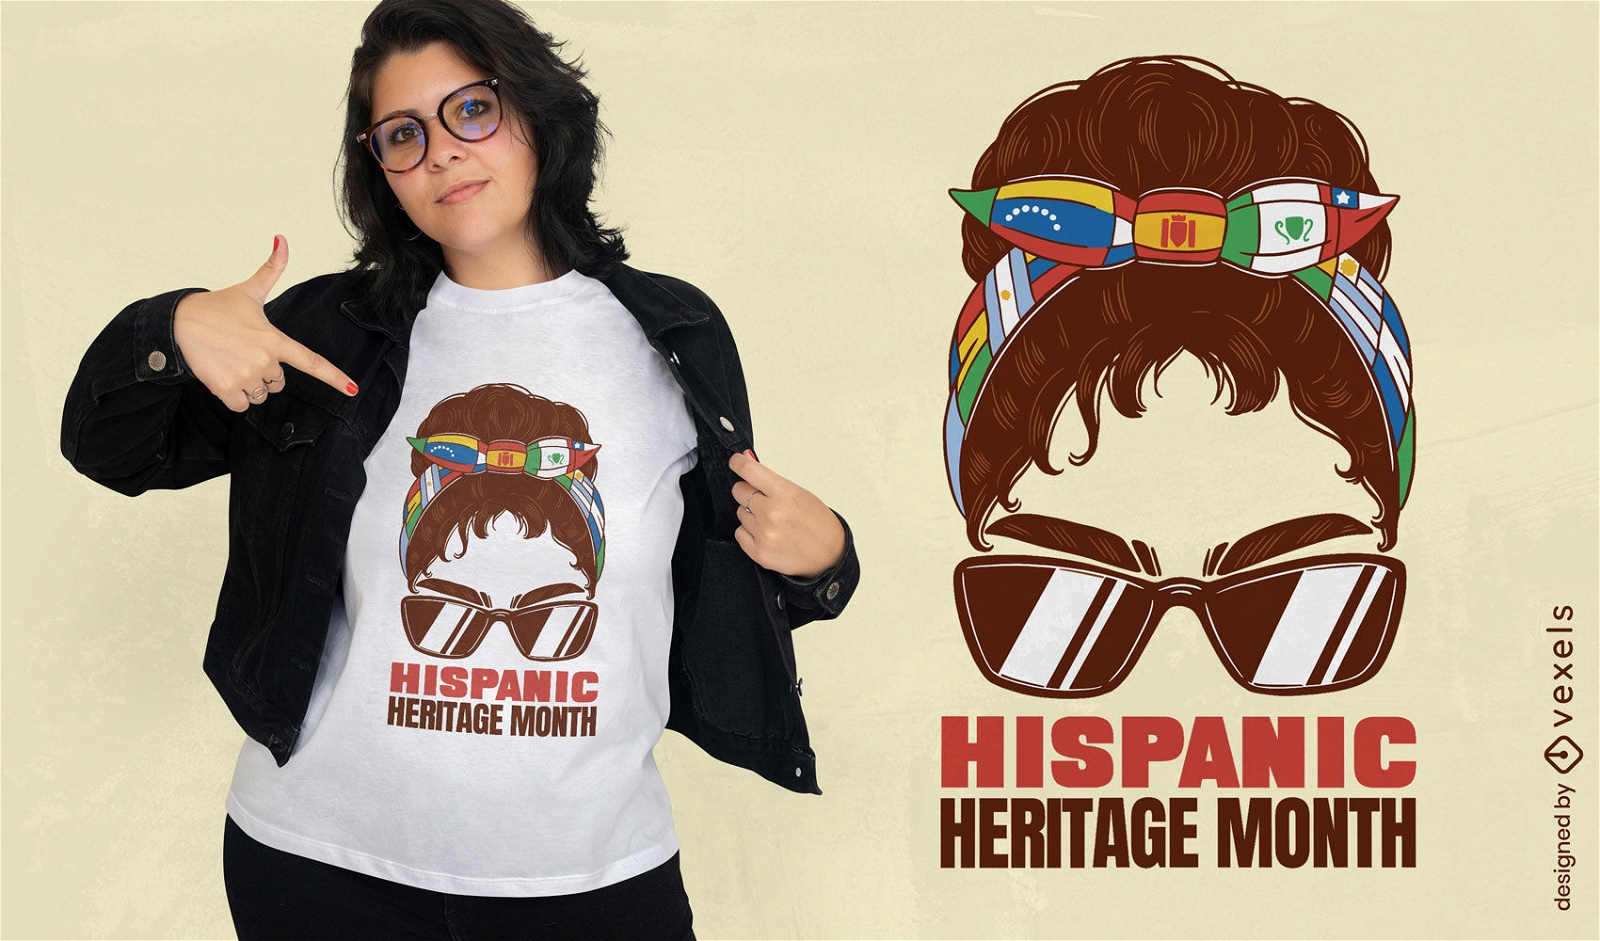 Diseño de camiseta del mes de la herencia hispana